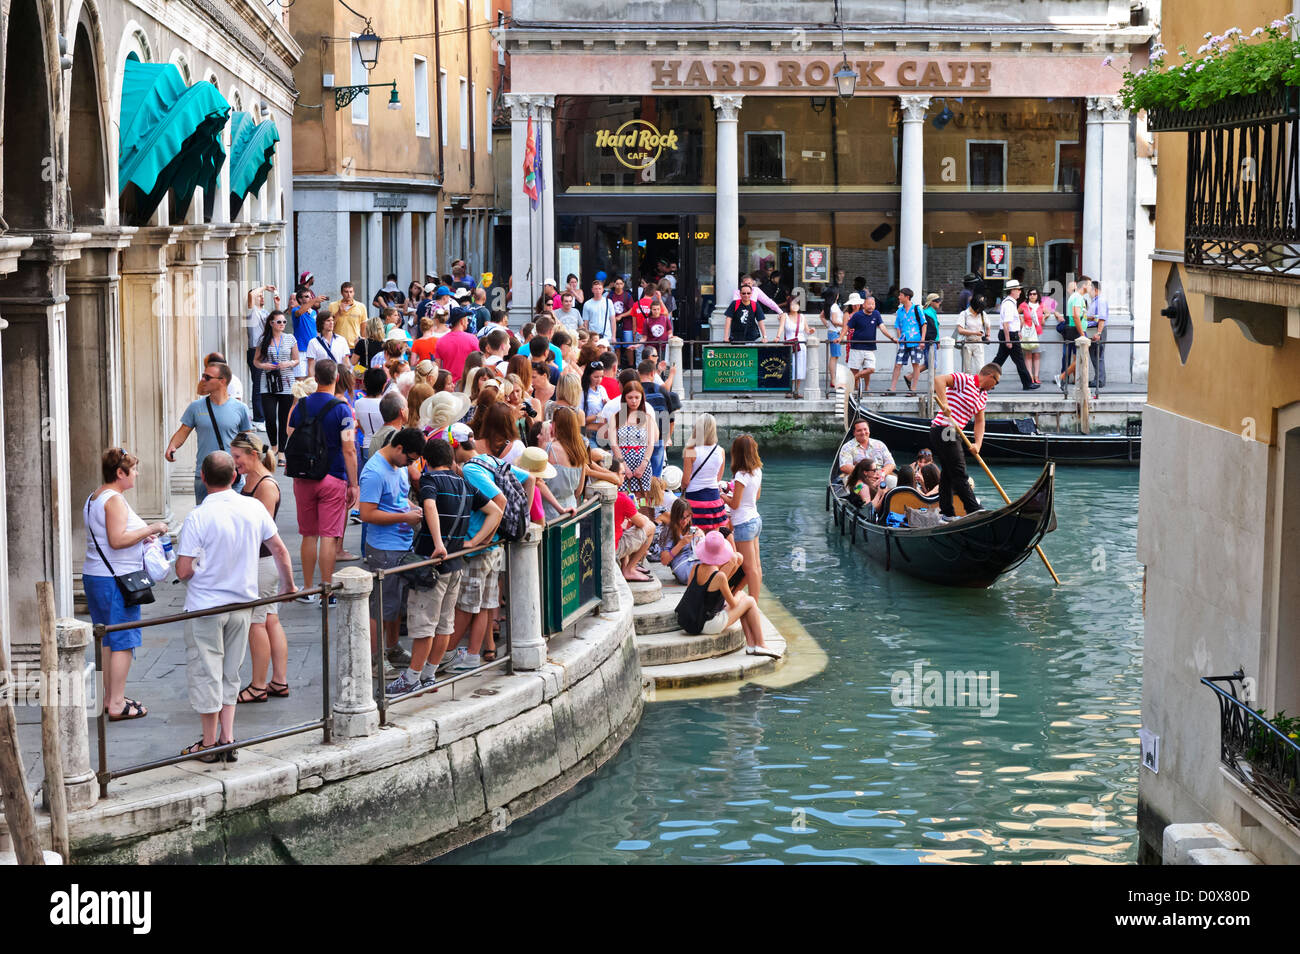 Tourists gathered by the Hard Rock Café, Venice, Italy Stock Photo - Alamy